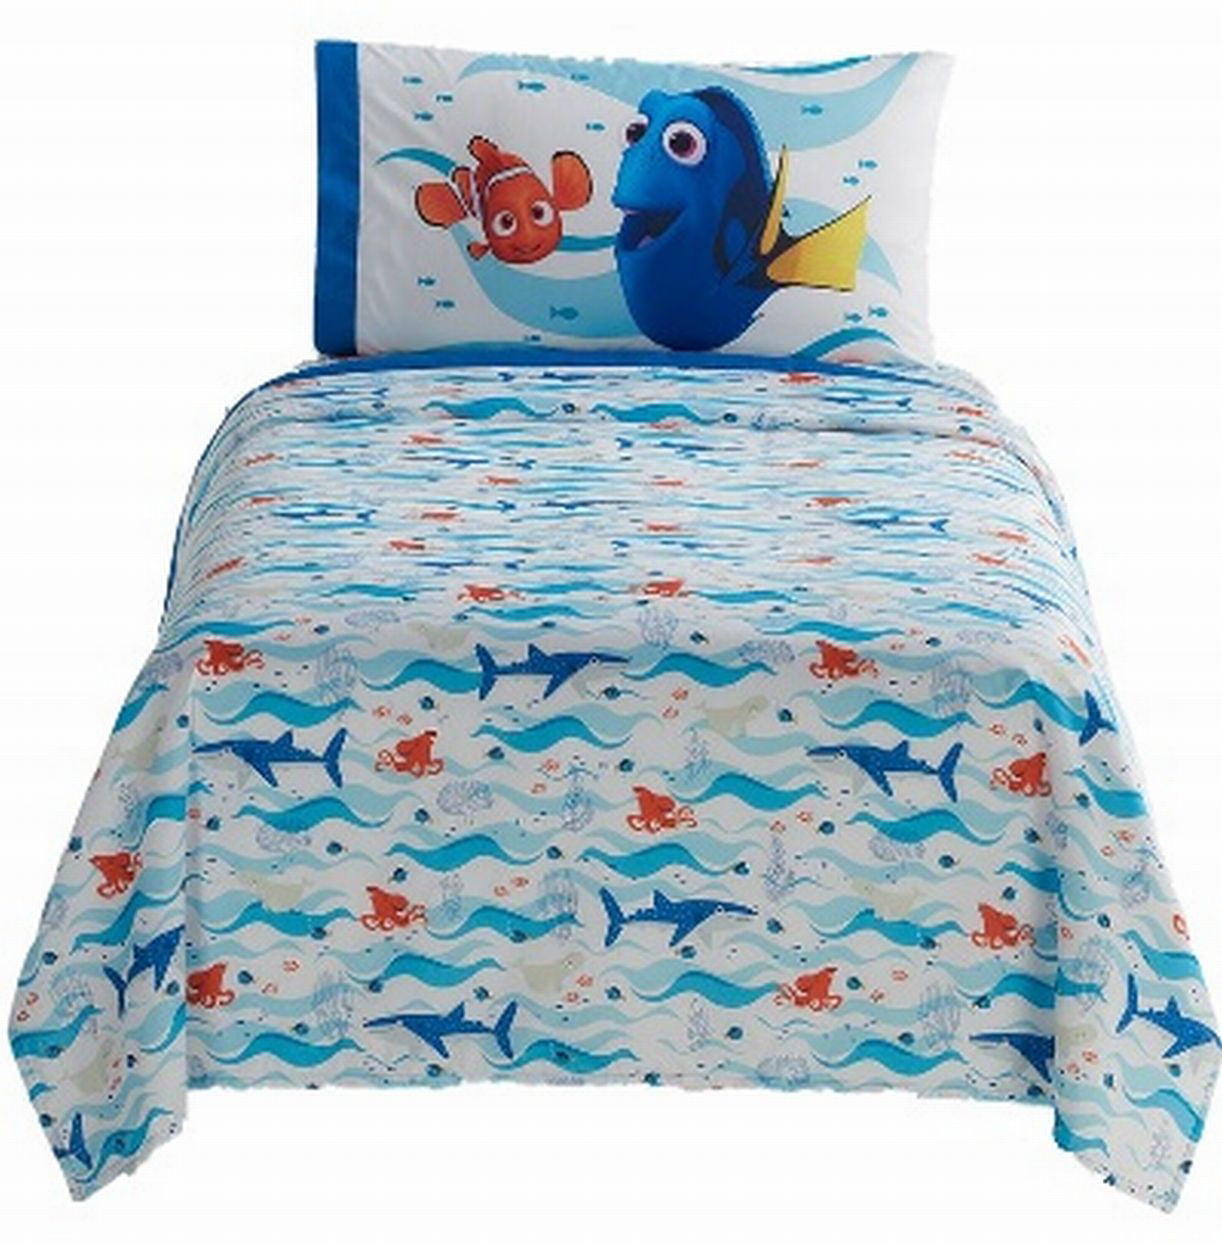 5Pc Disney Pixar Finding Dory Reversible Comforter & Full Sheet Set Finding Nemo 